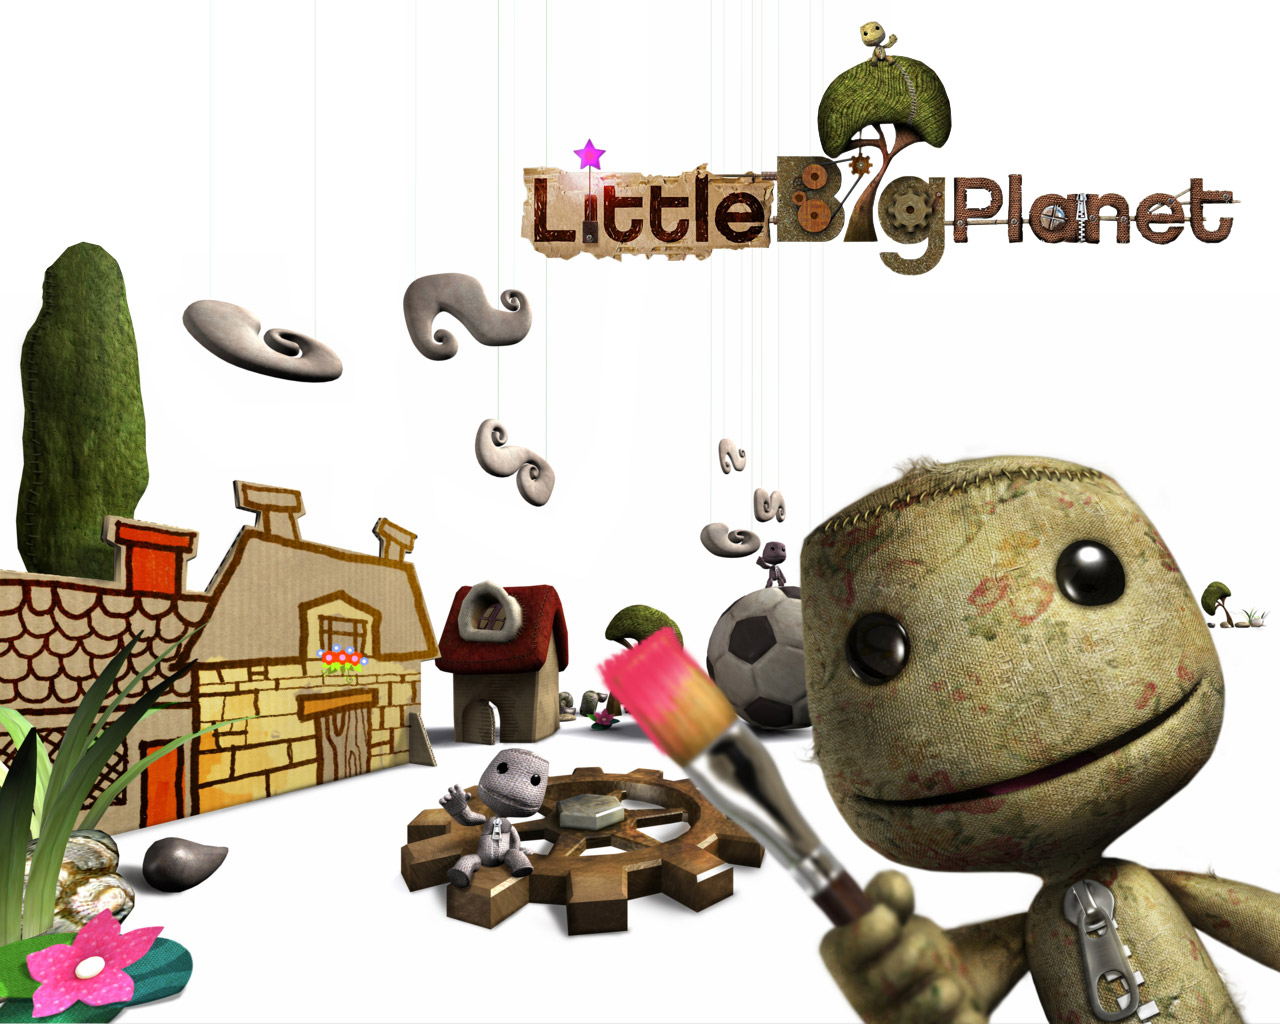 LittleBigPlanet per PS Vita arriva sul mercato